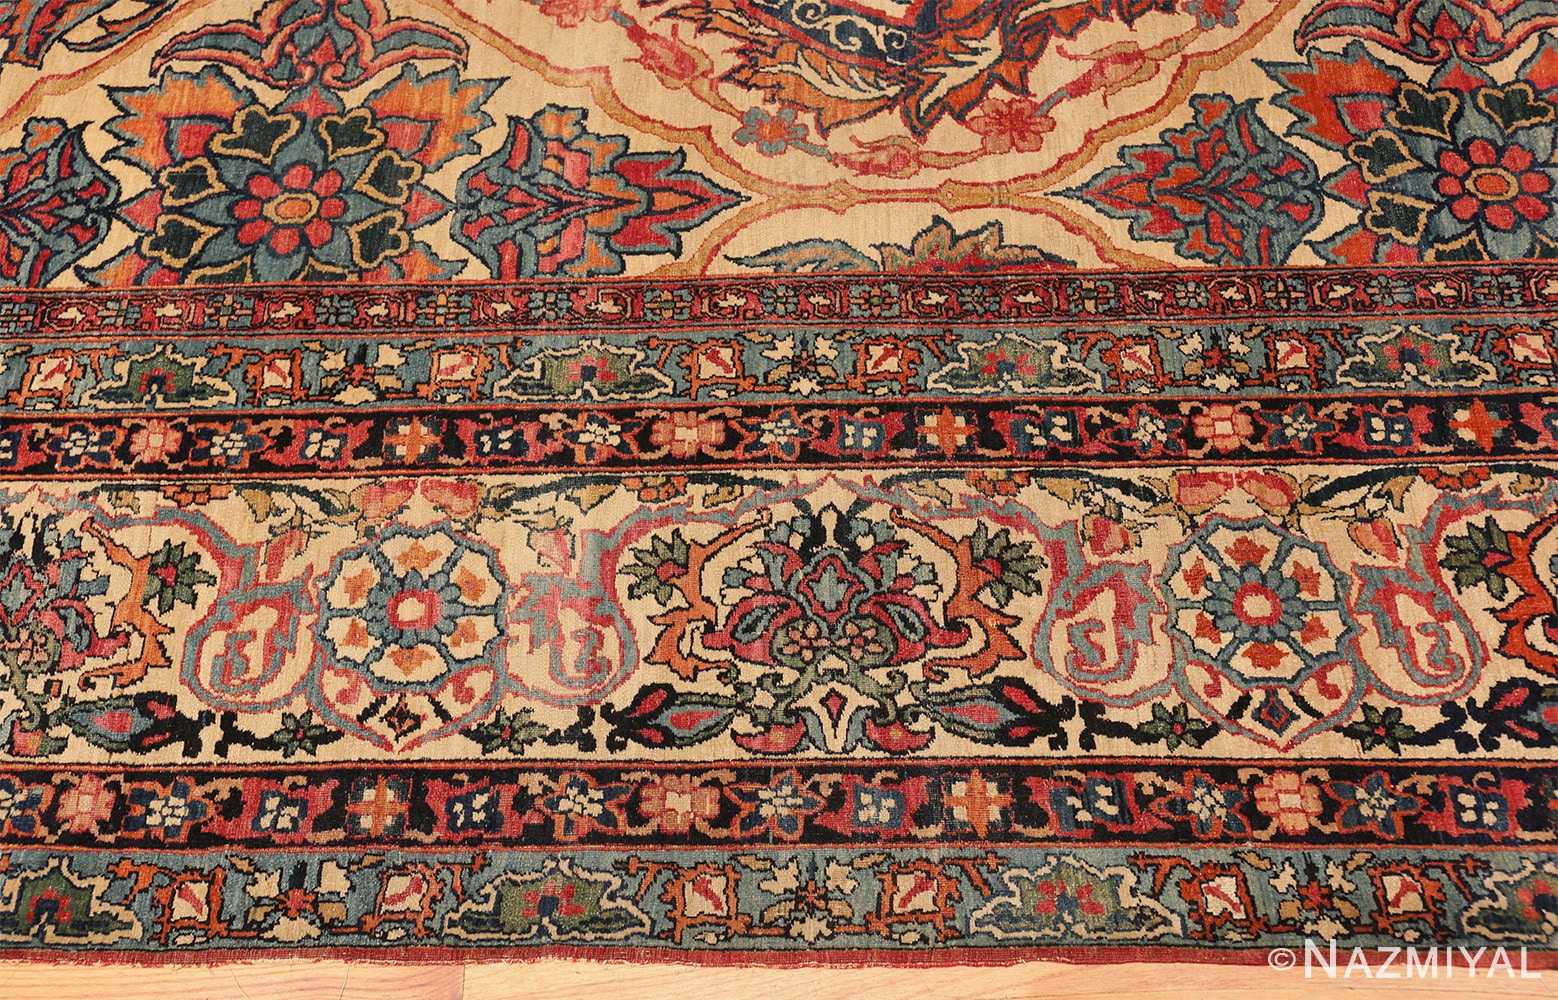 Border Antique Persian Kerman rug 70219 by Nazmiyal